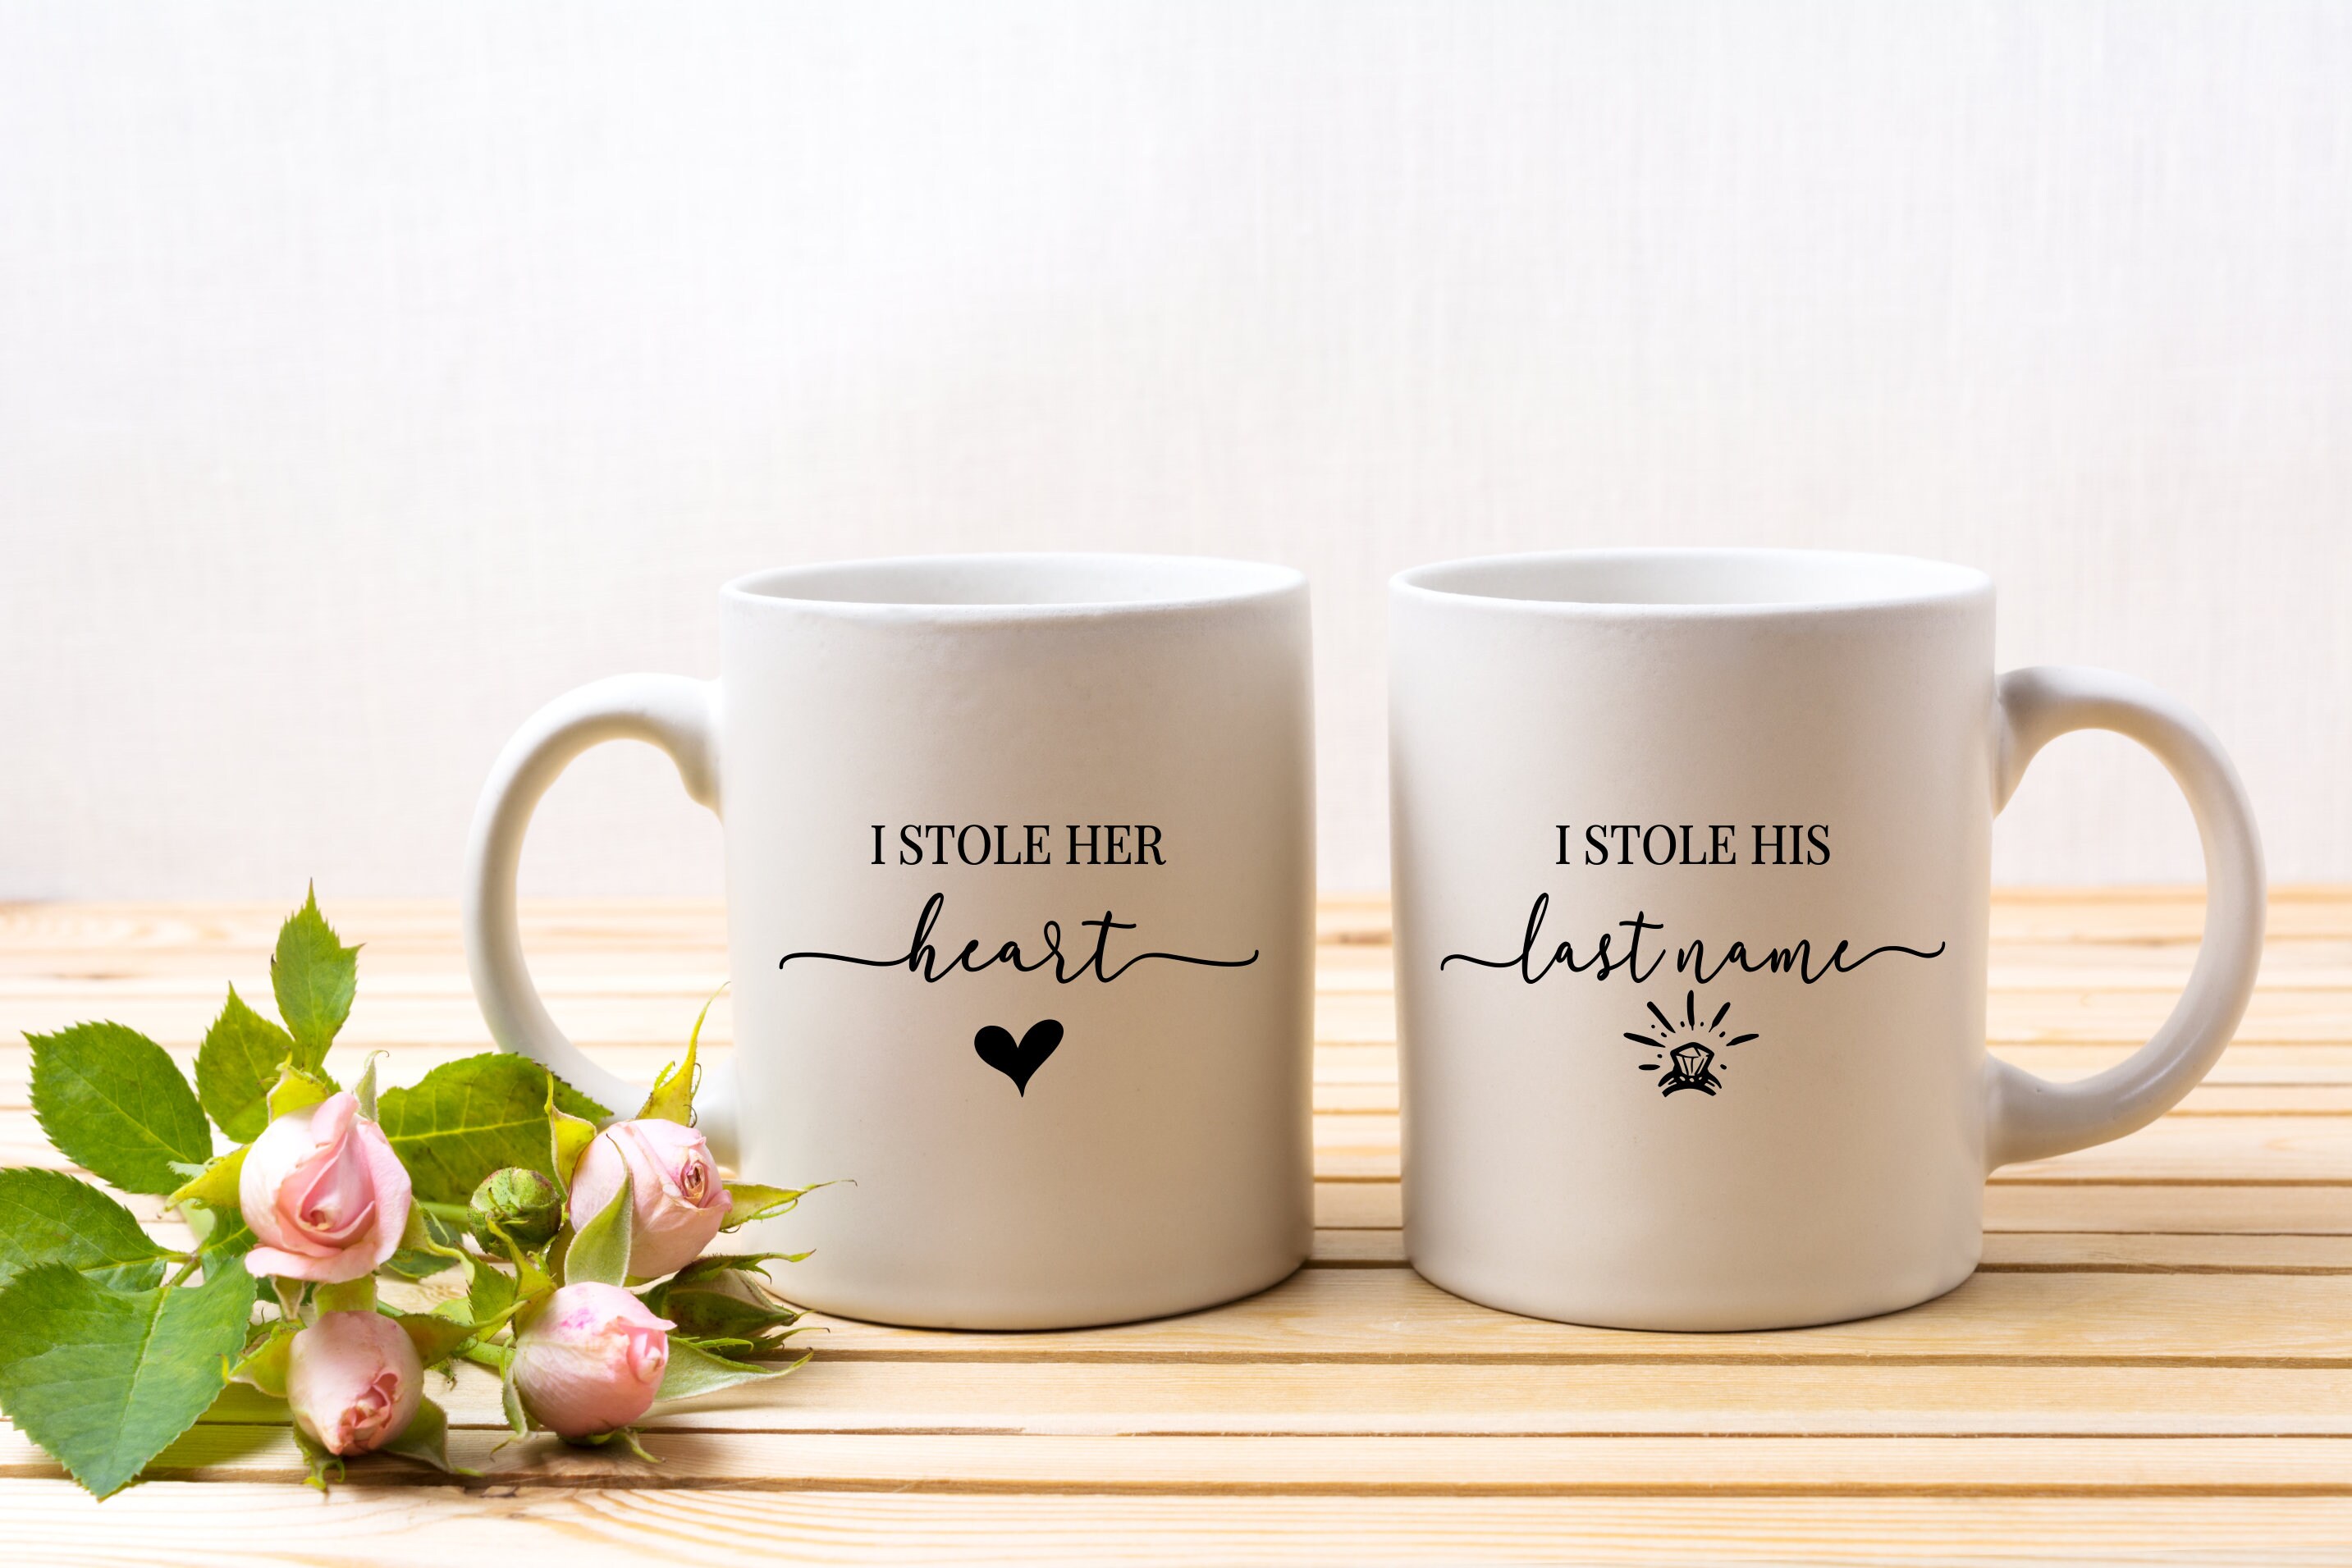 Juego de 2 tazas de café personalizadas para parejas, regalo para él, ella,  y así juntos construyeron una vida que amaban viajar taza de té blanca de